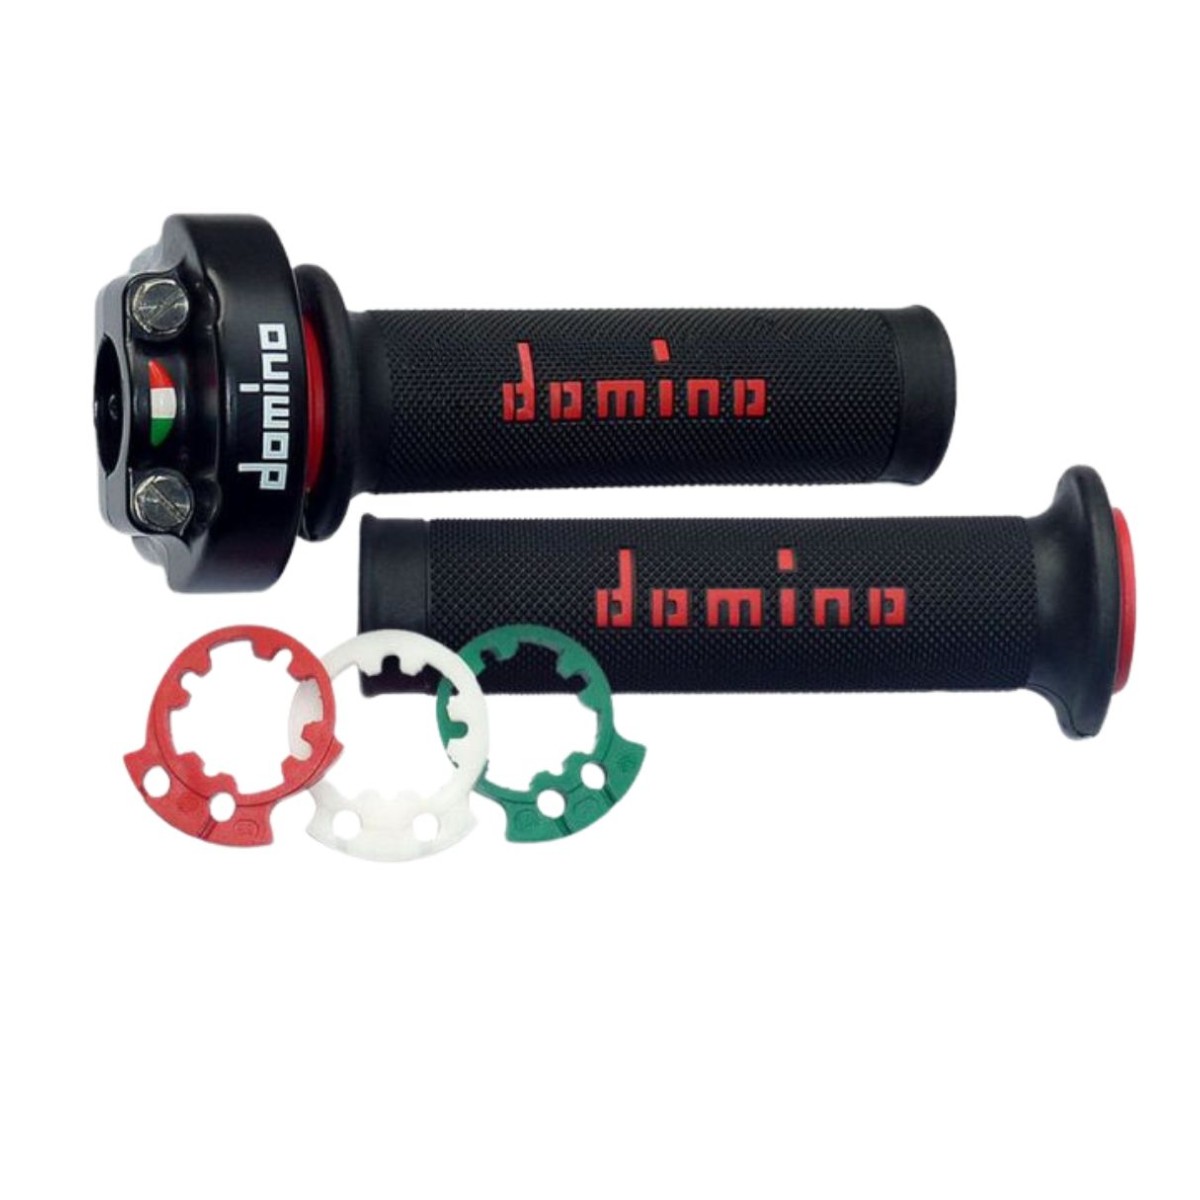 Puño de gas Desmodrómico Domino XM2 + Puños con reguladores de recorrido. 2